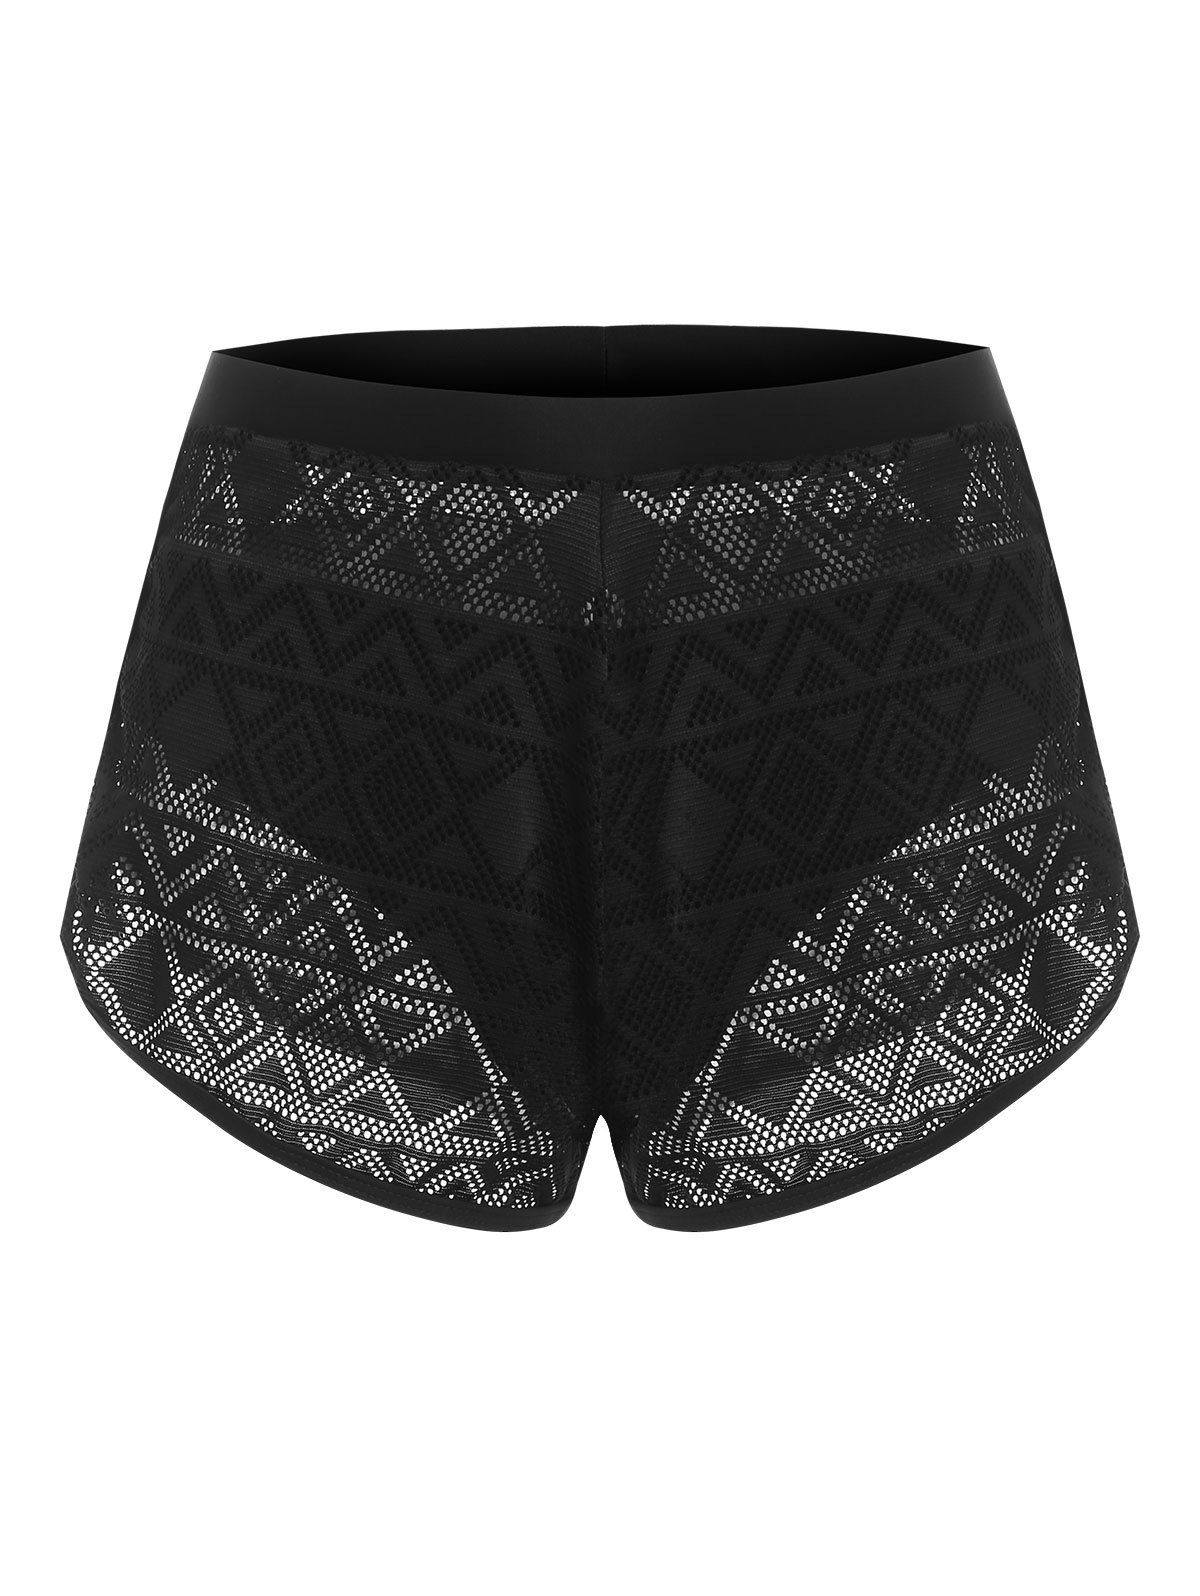 Geo Pointelle Knit Shorts with Briefs - BLACK XXL